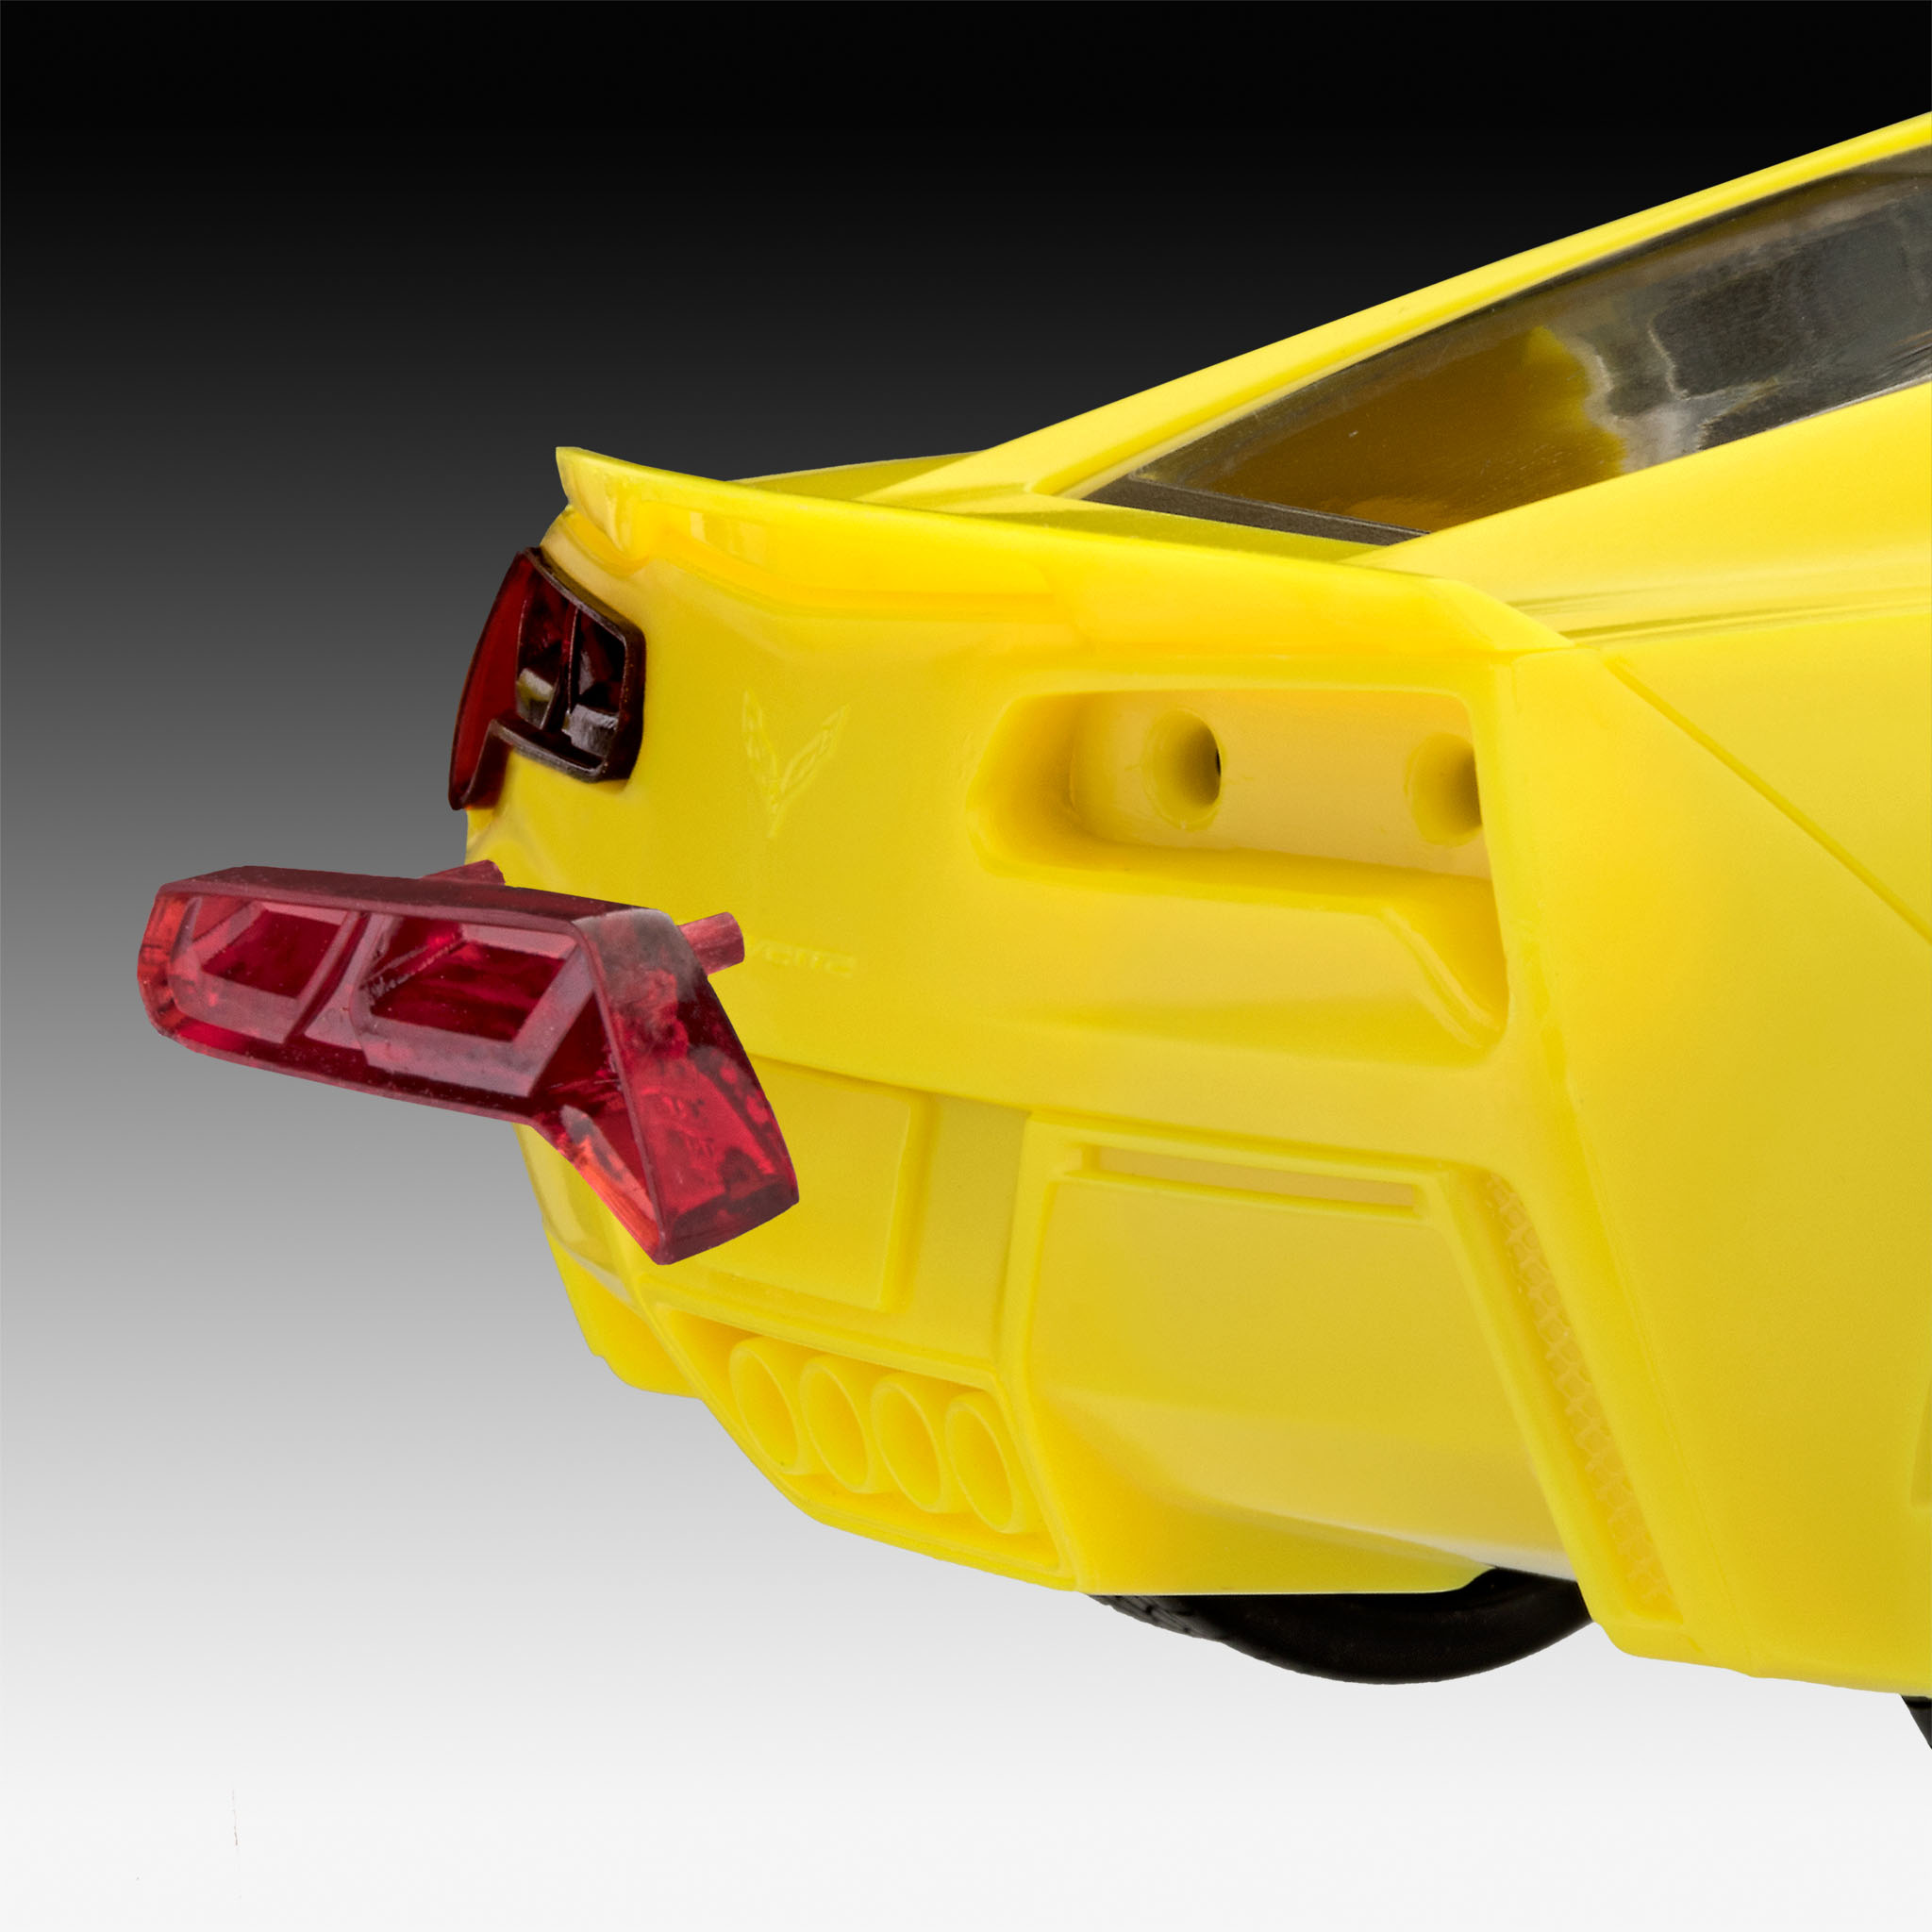    Corvette Stingray 2014 .,  1:25, Revell 07449. # 6 hobbyplus.ru